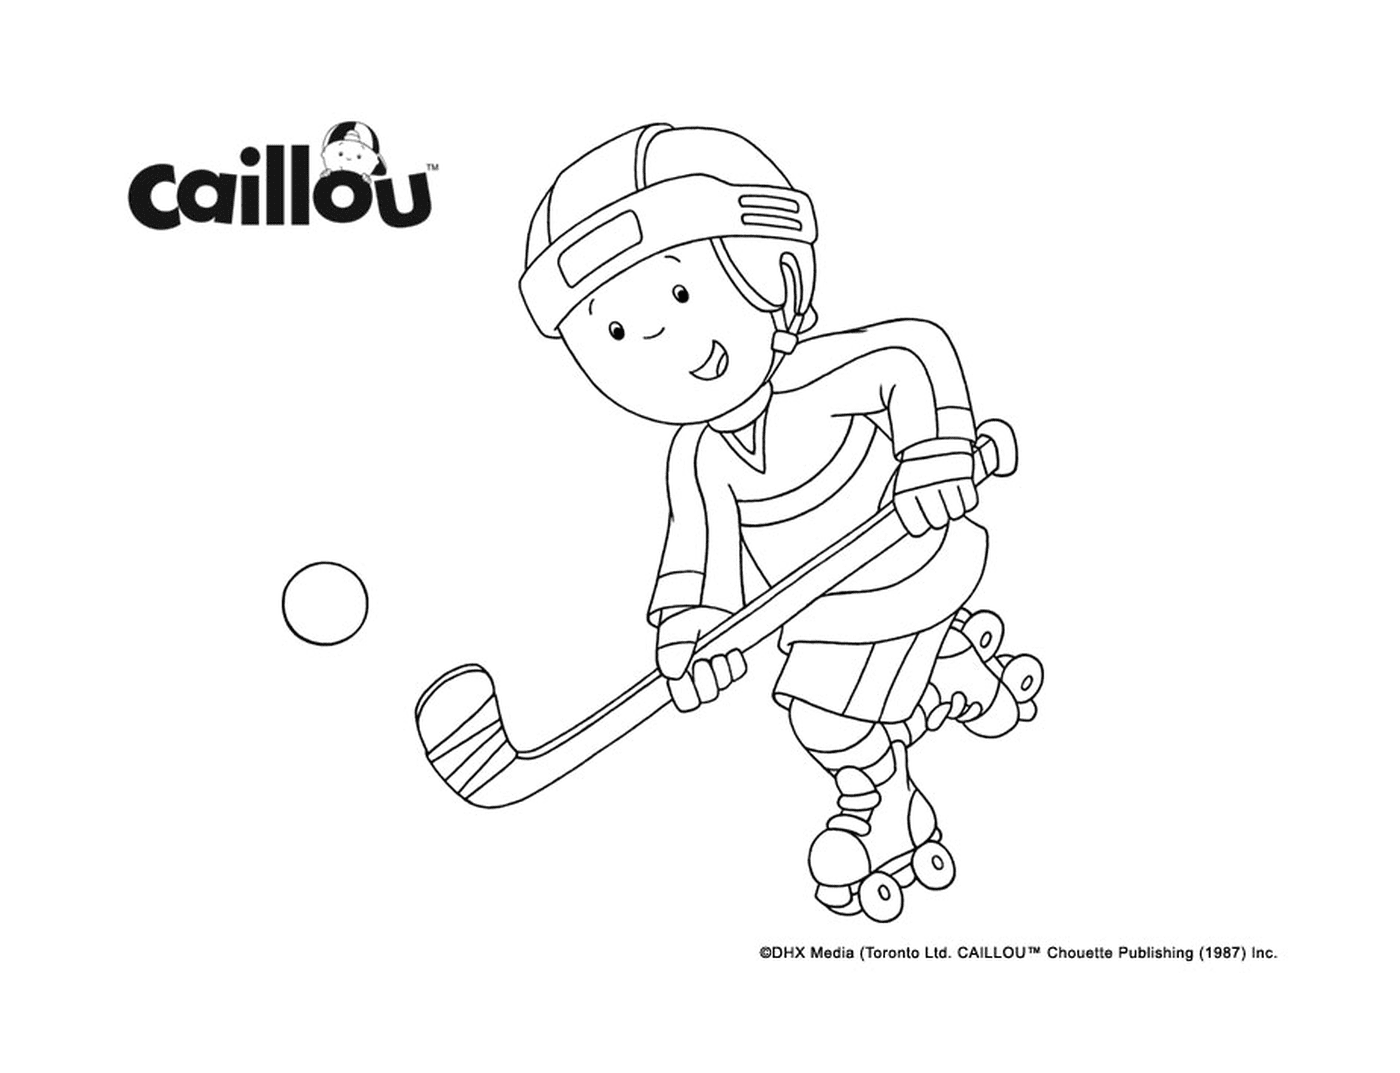  Caillou juega hockey para la Copa Stanley 